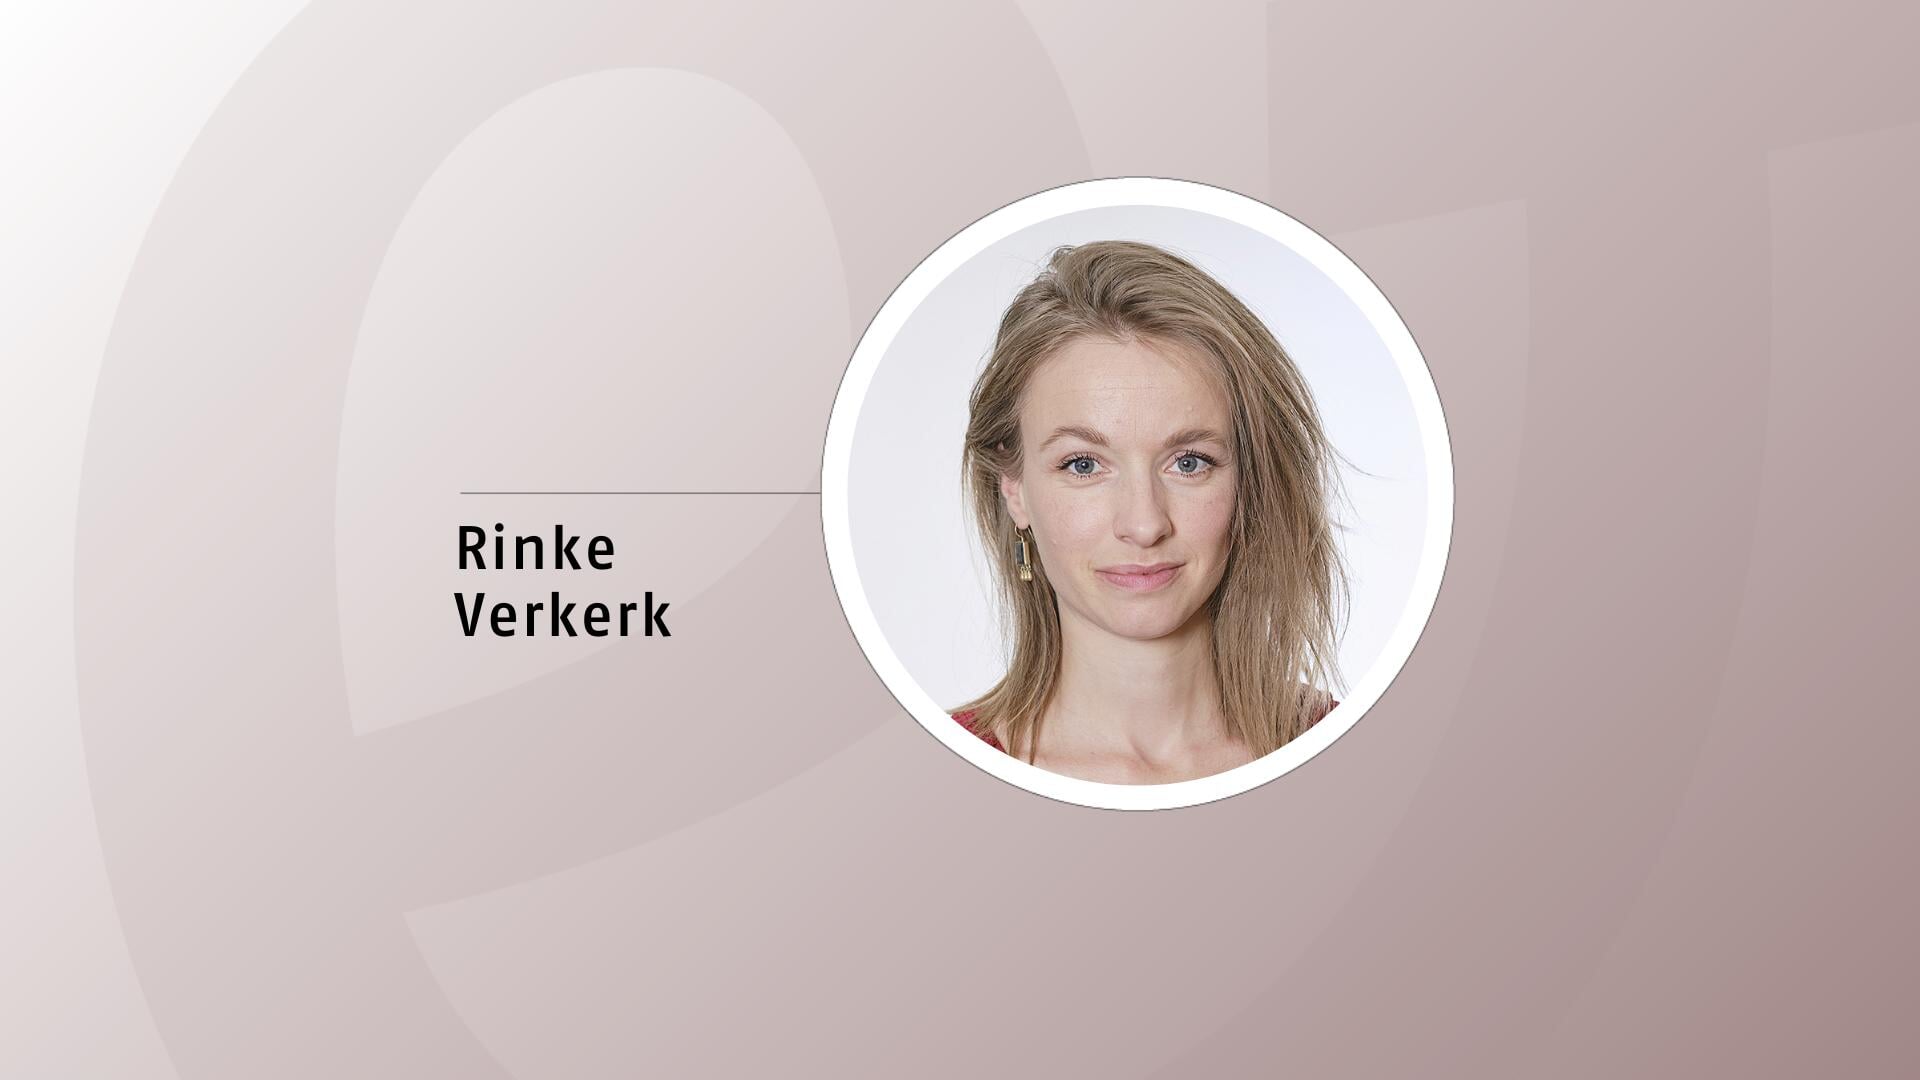 Rinke Verkerk